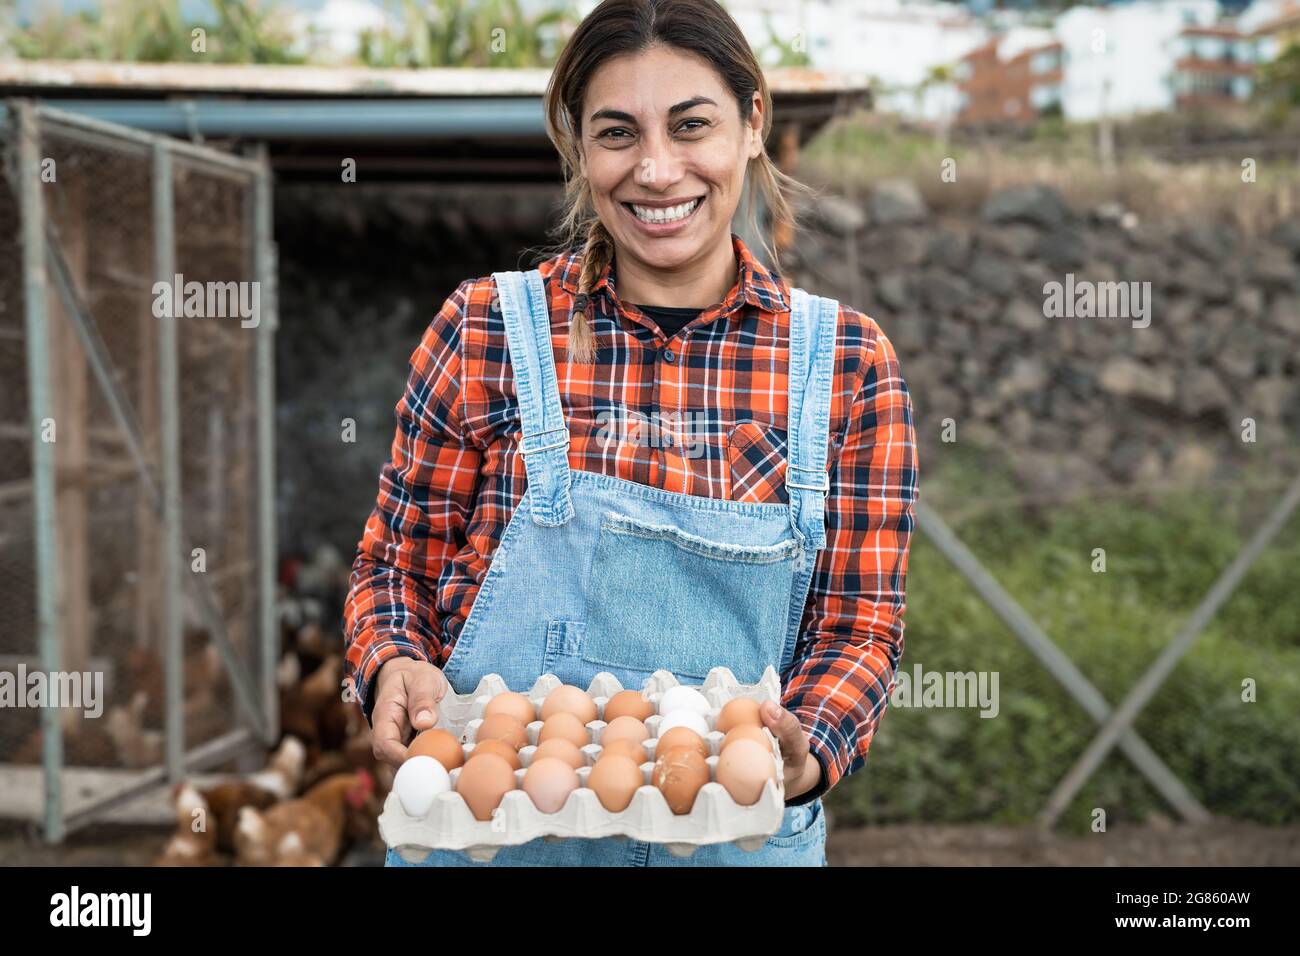 Reife Bäuerin, die frische Eier im Hühnerhausgarten pflücken - Farm People Lifestyle-Konzept Stockfoto